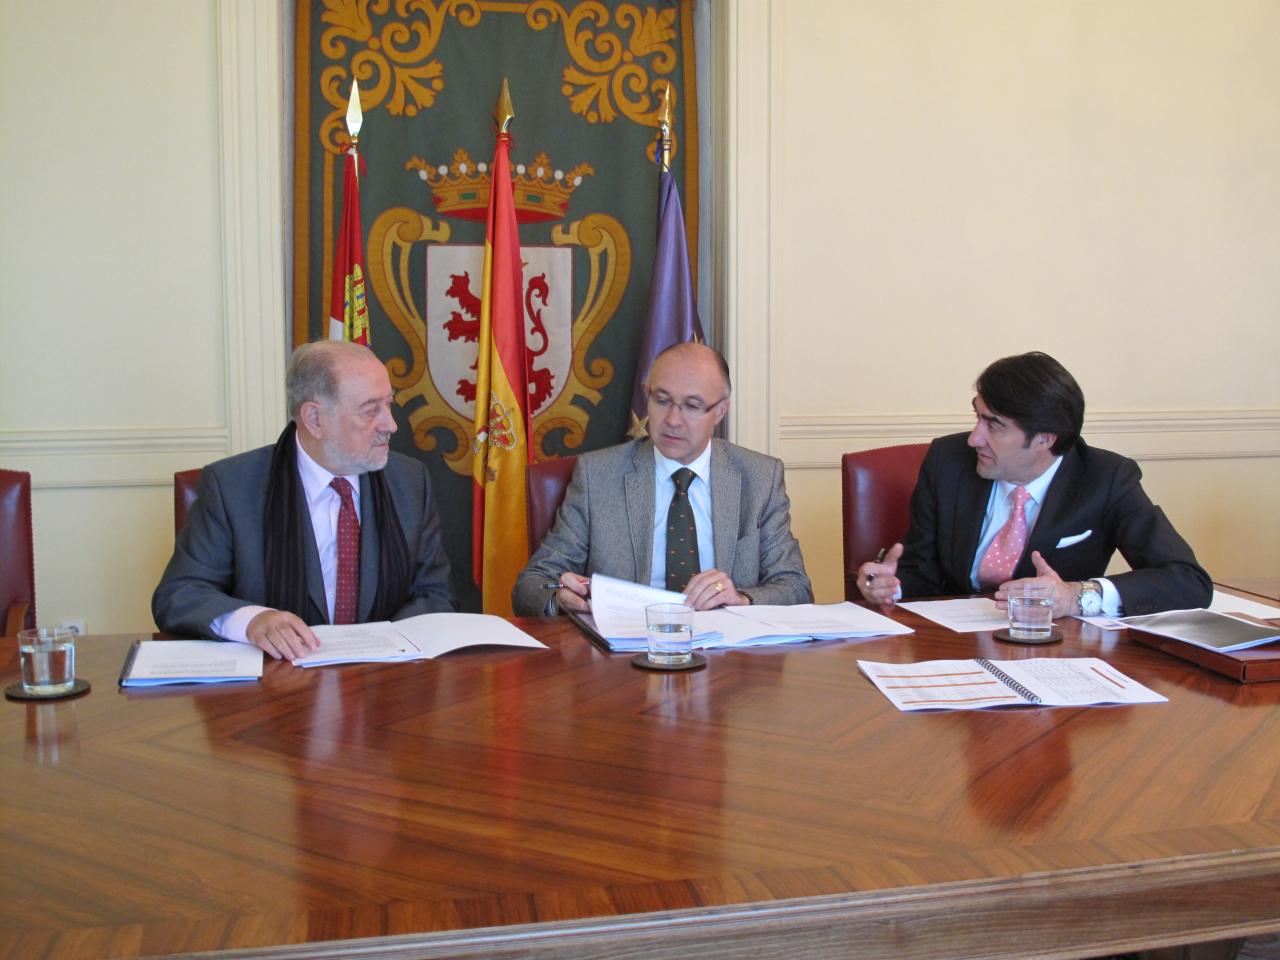 Reunión previa entre los delegados del Gobierno de Asturias y Castilla y León para coordinar el dispositivo de vialidad invernal entre sendos territorios
<br/>